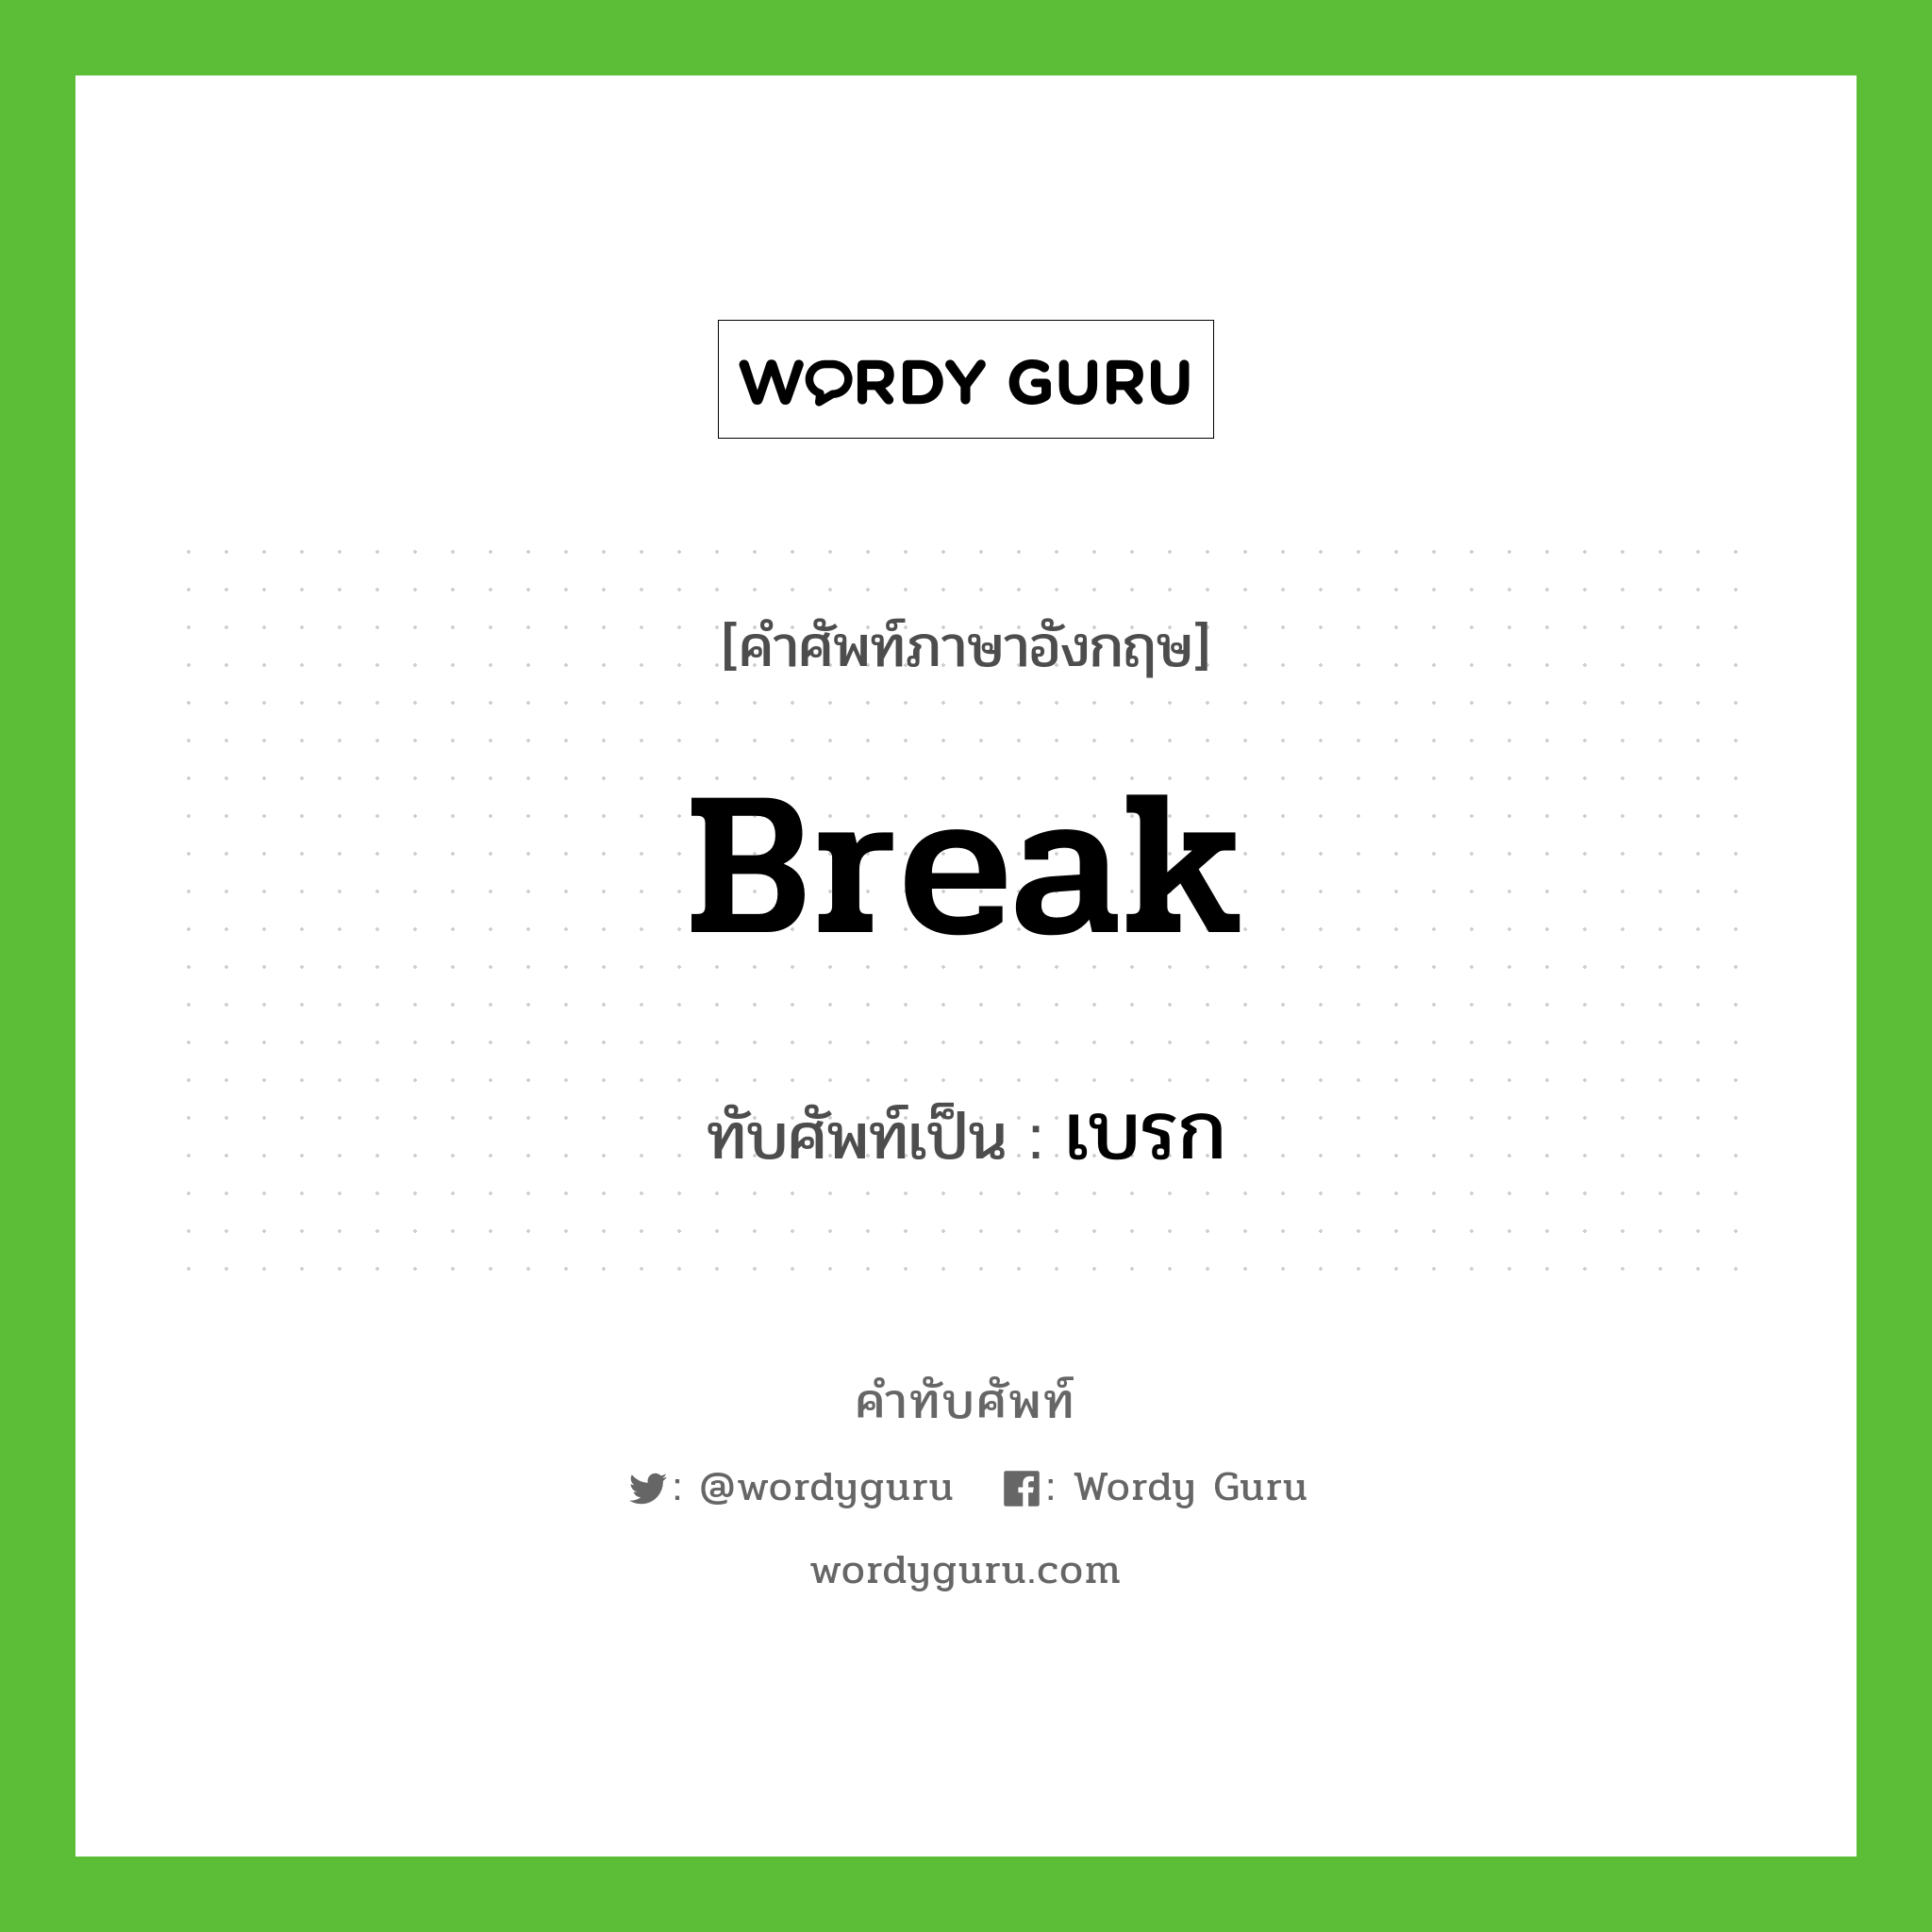 Break เขียนเป็นคำไทยว่าอะไร?, คำศัพท์ภาษาอังกฤษ Break ทับศัพท์เป็น เบรก